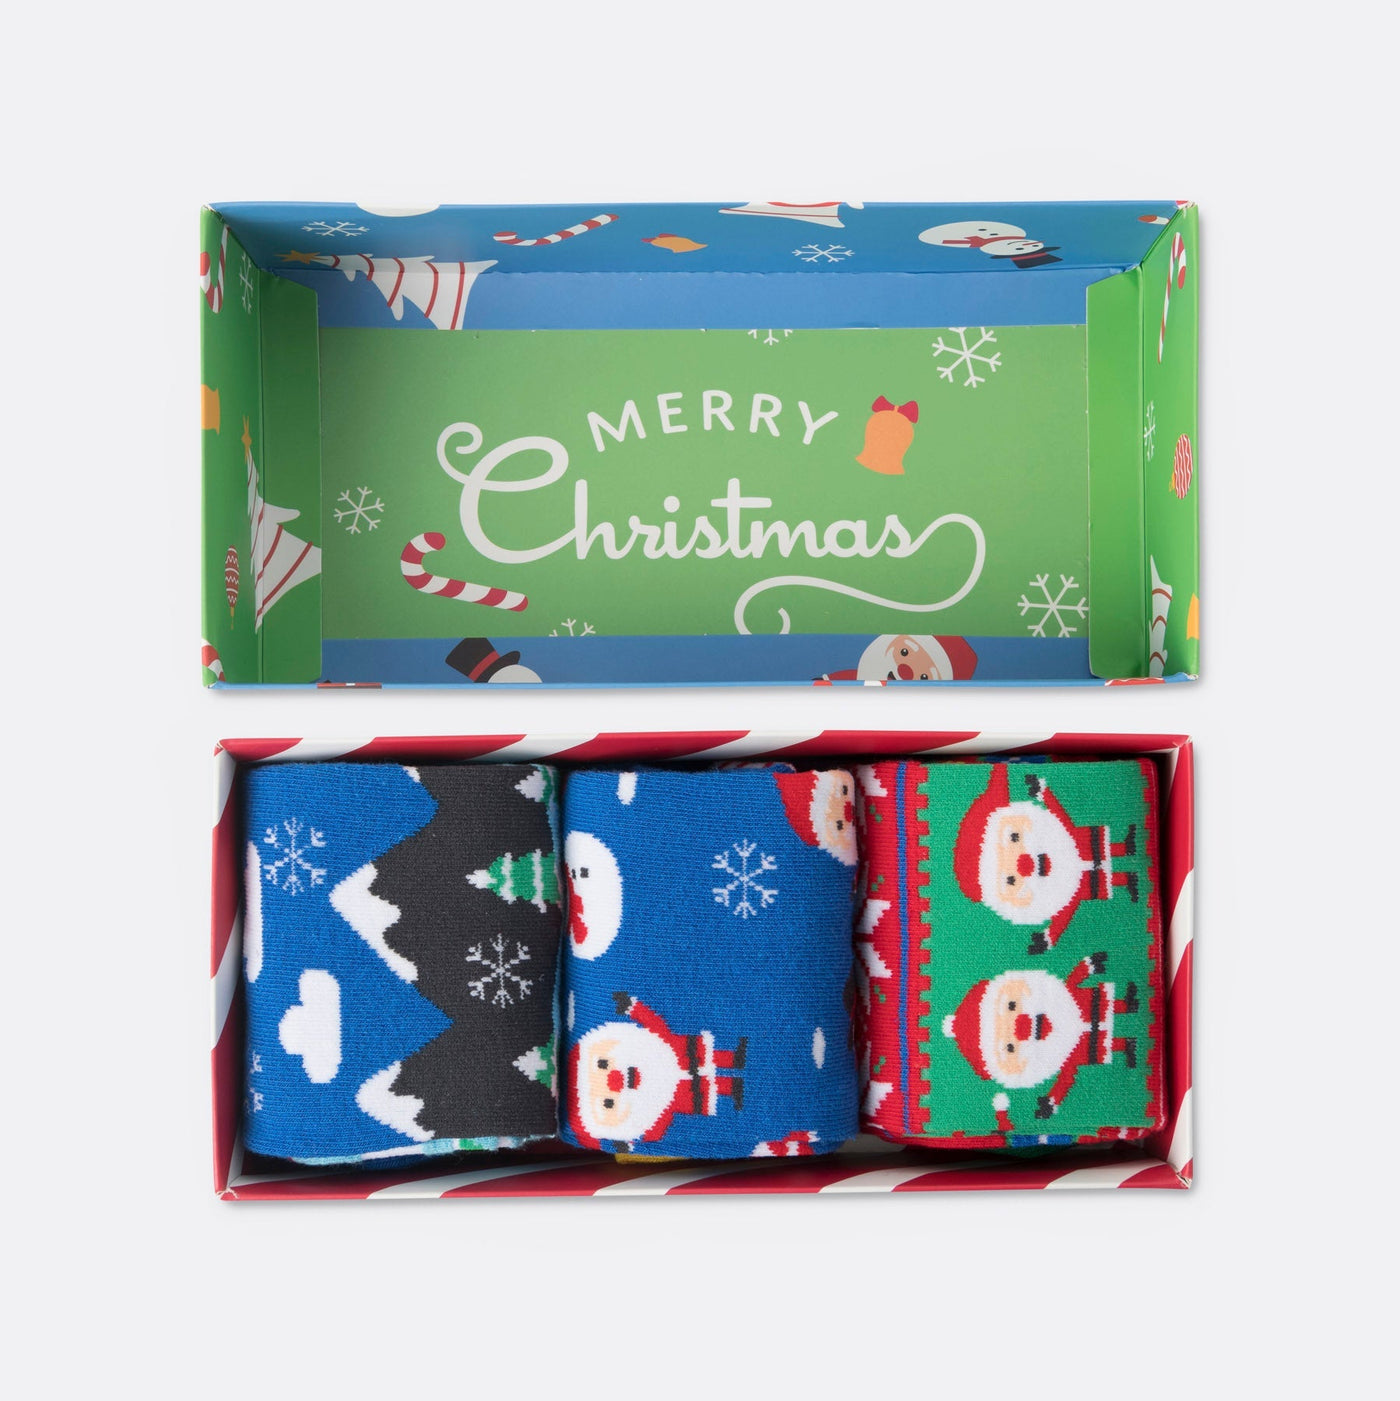 Kerstsokken Geschenkdoos Voor Kinderen (3-pack)